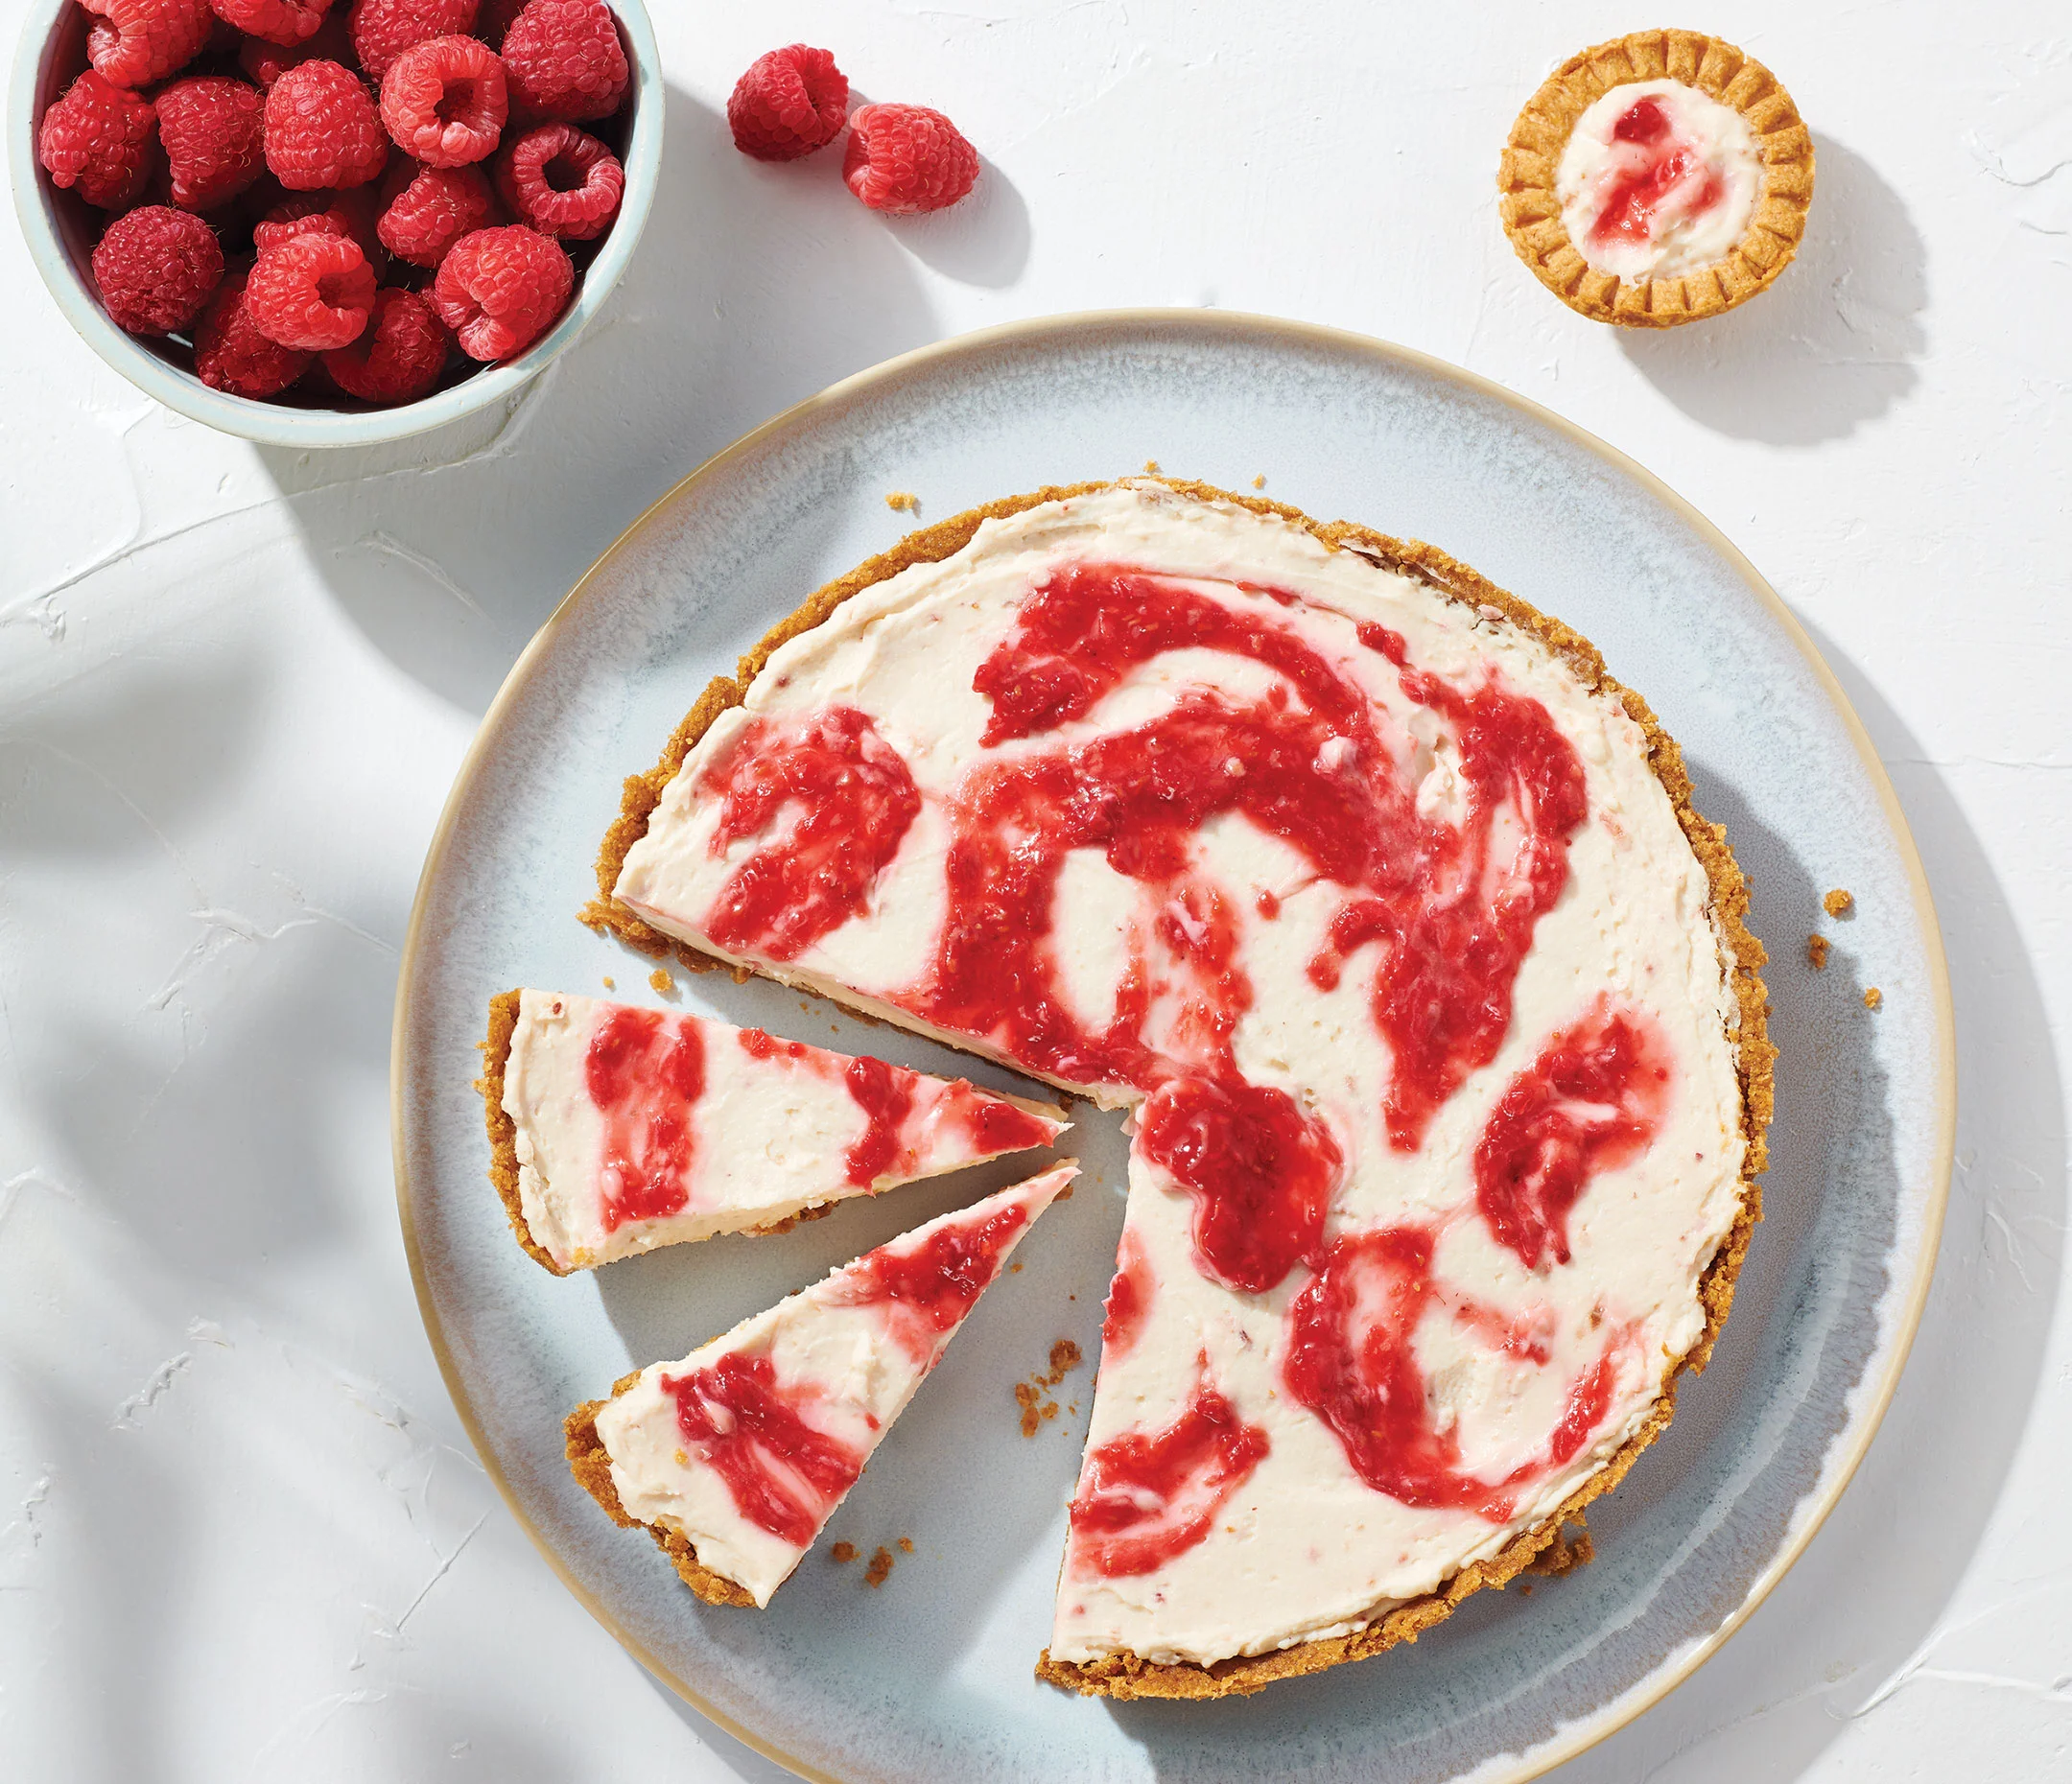 Berry Swirl No-Bake Cheesecake Mix (Pack of 2)